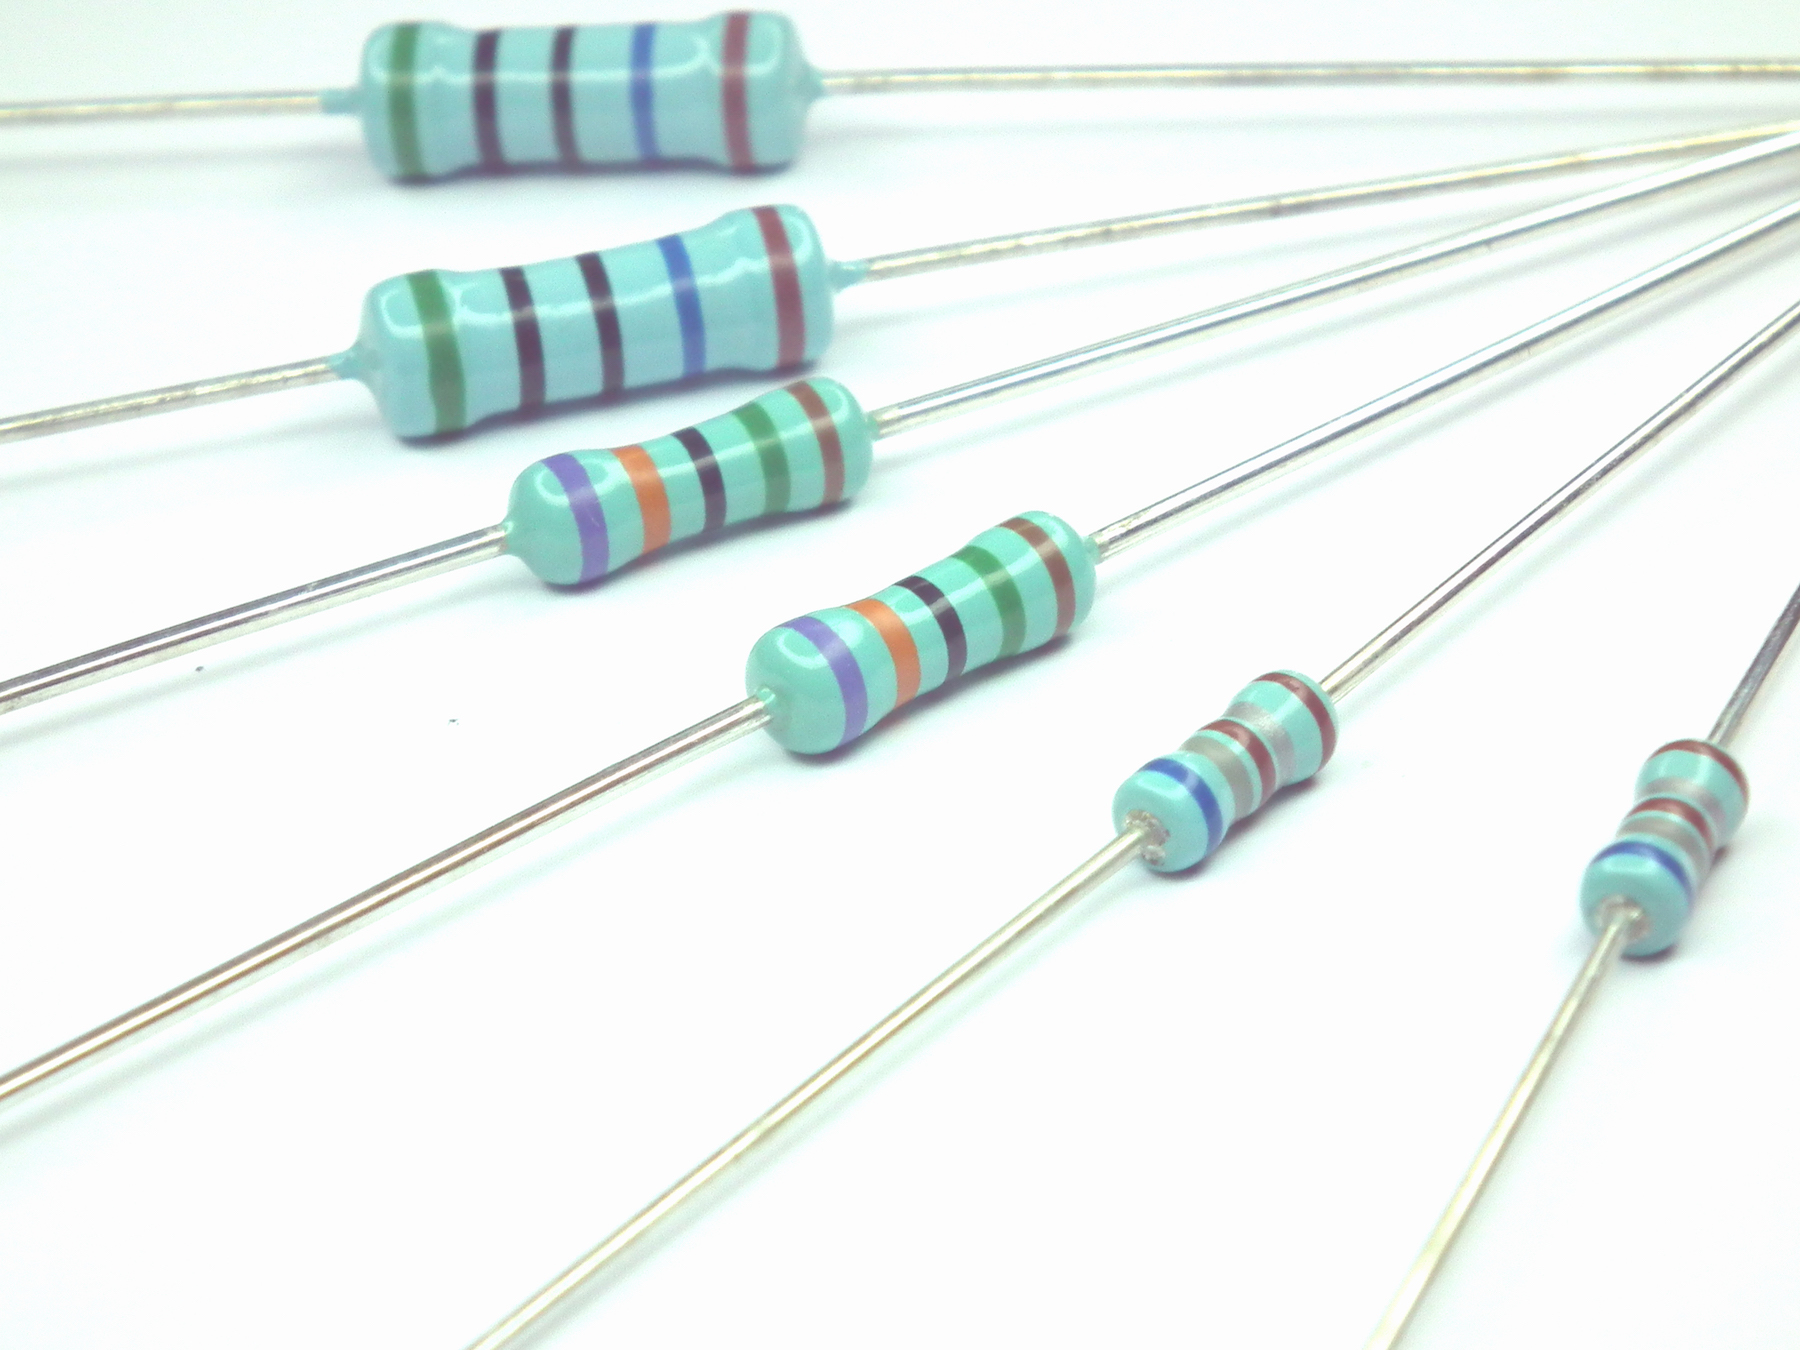 Thru-Hole Resistor Offers High Voltage Handling up to 8000V